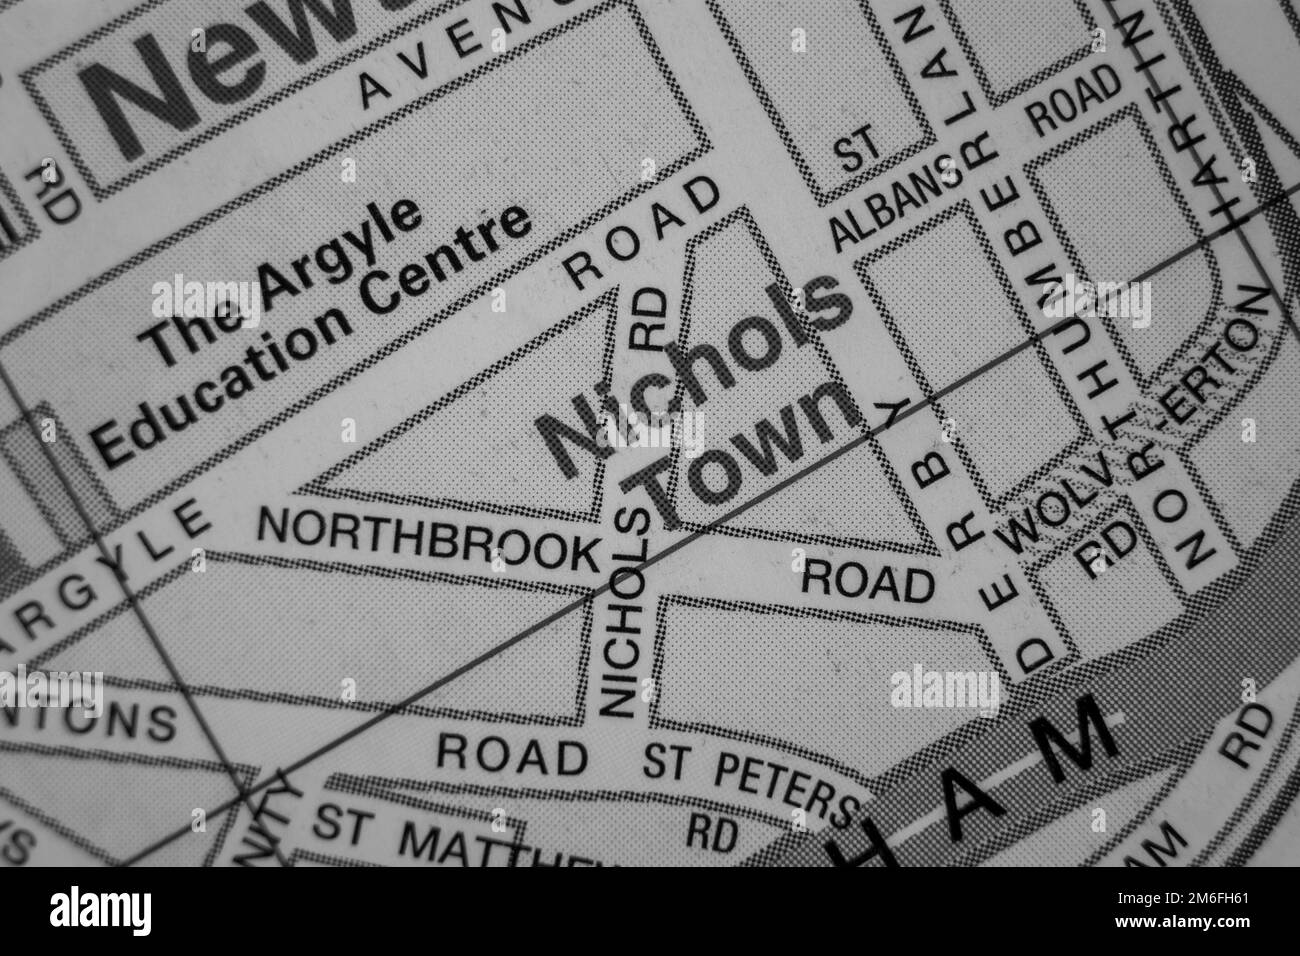 Nichols Town District de la ciudad portuaria de Southampton, Hampshire, Reino Unido atlas mapa nombre de la ciudad - blanco y negro Foto de stock